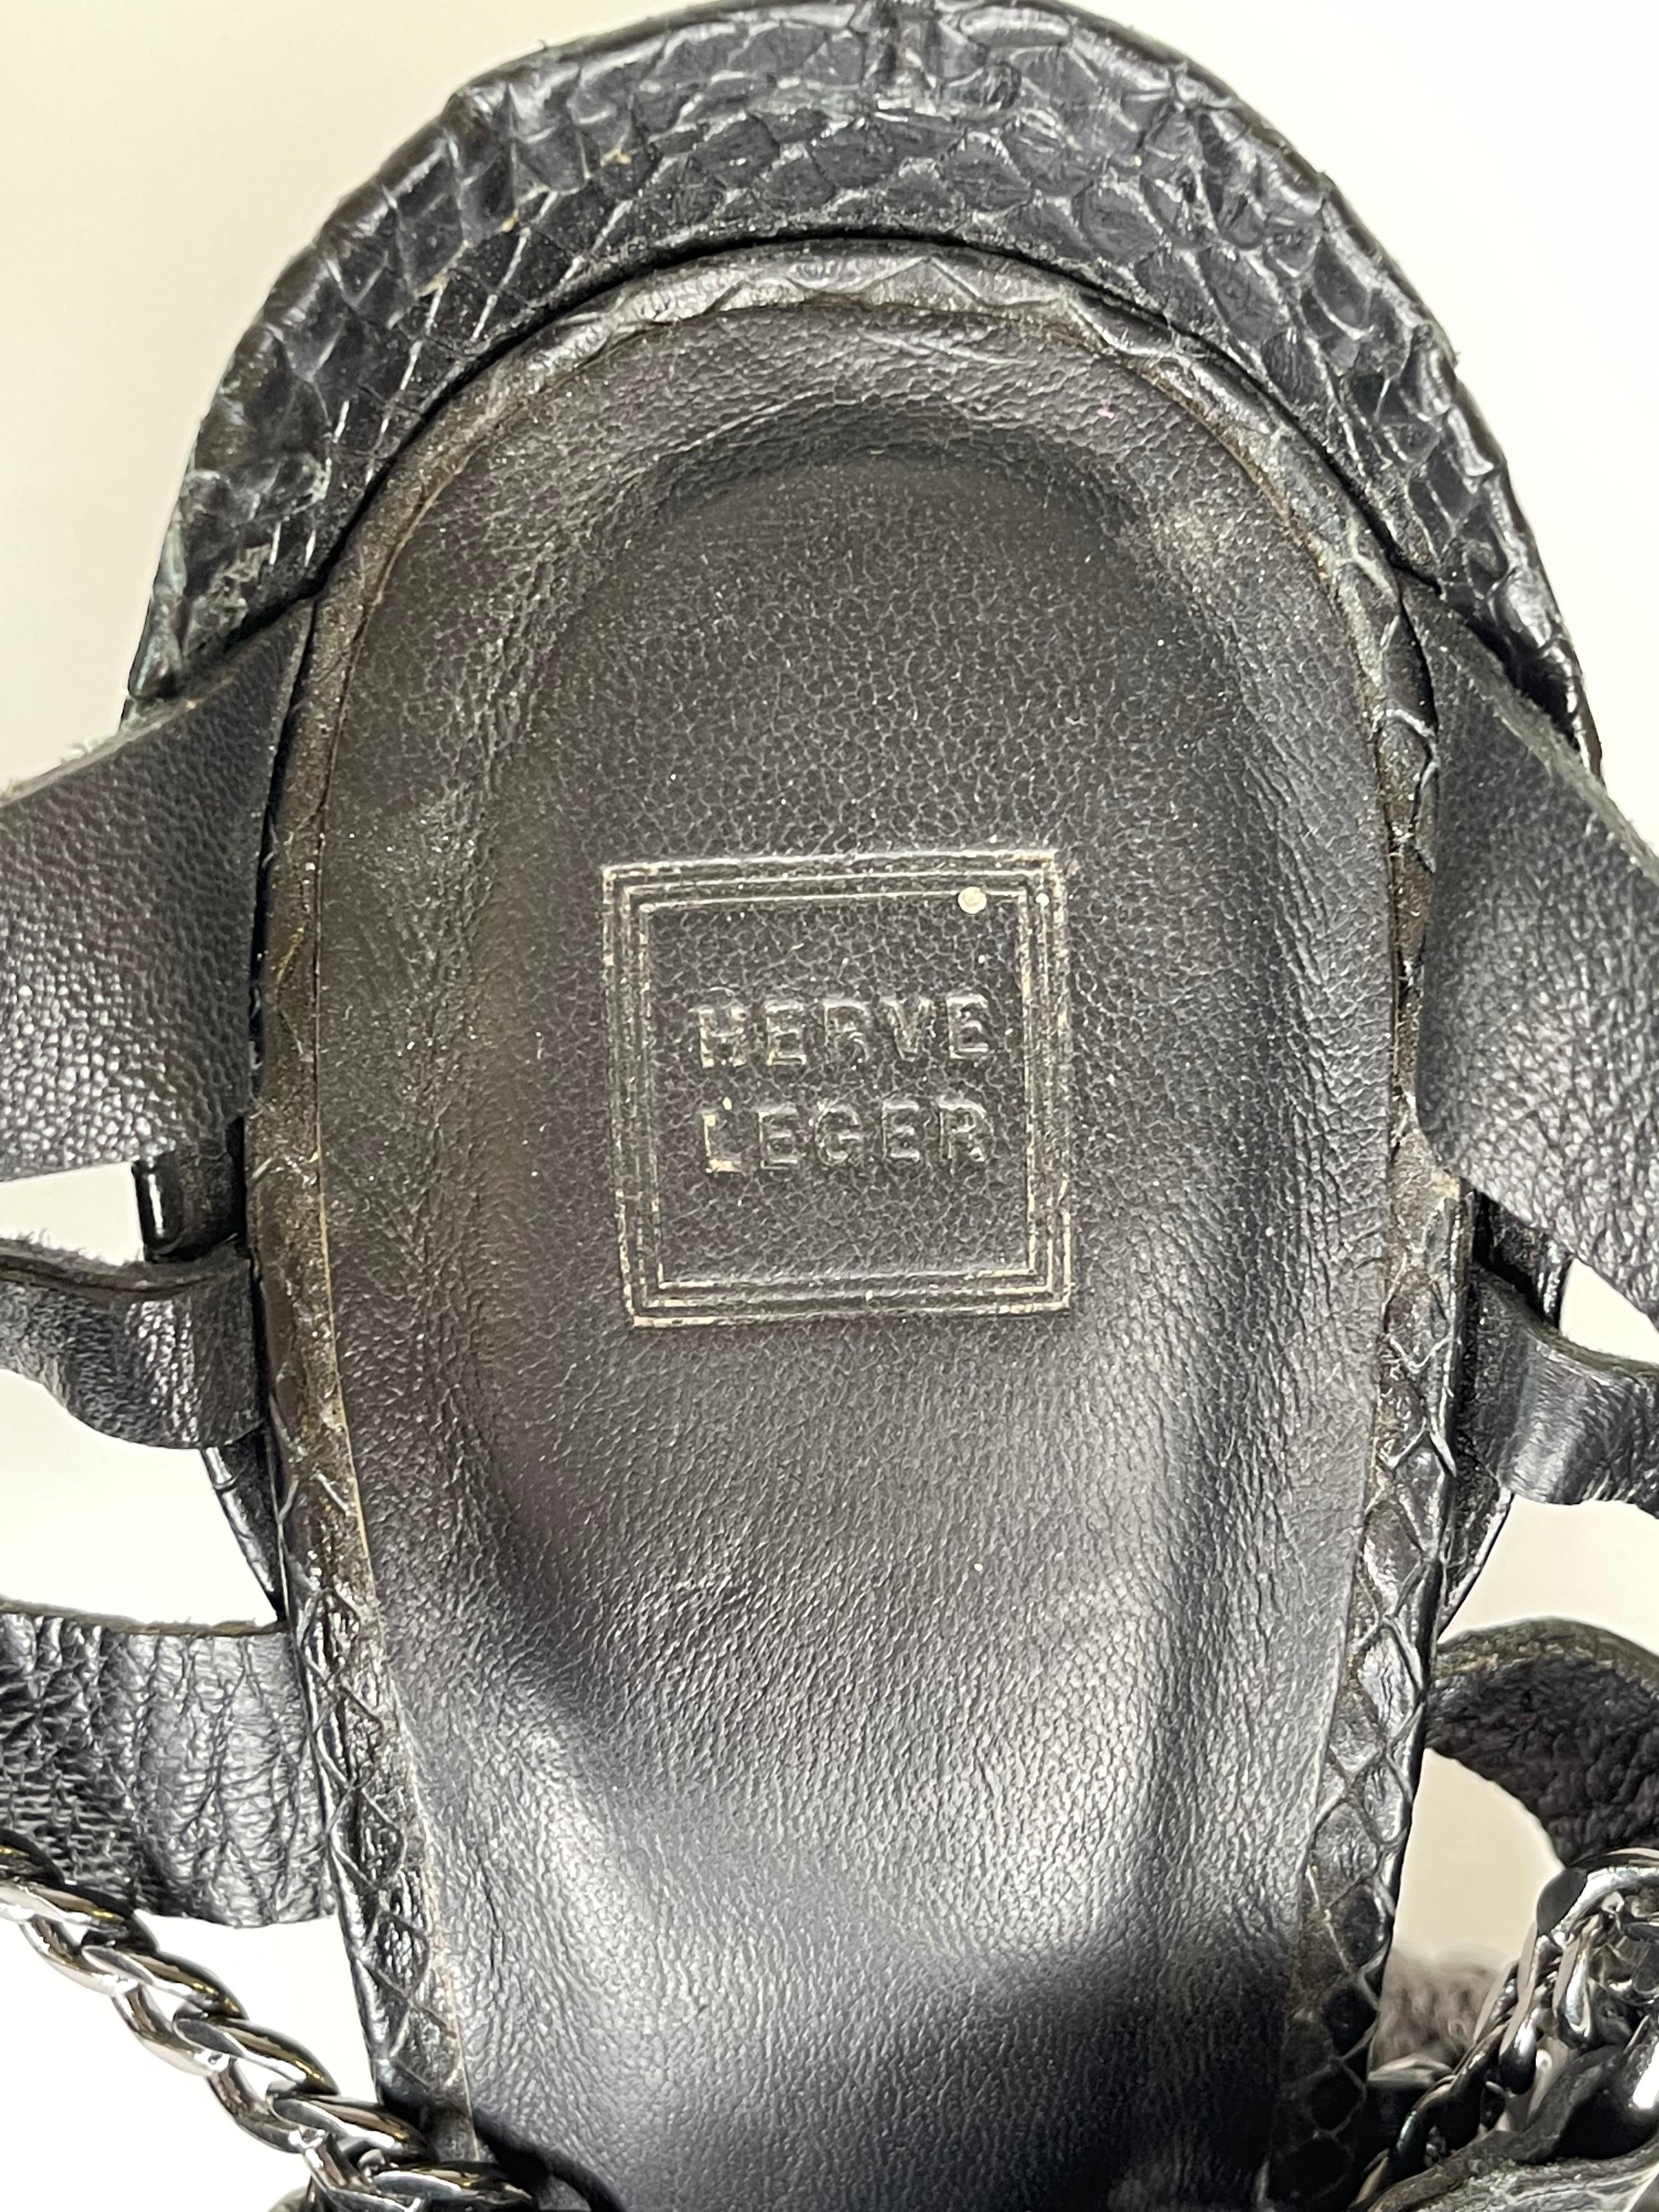 Herve Leger Black Python Embossed Strappy Stiletto Platform Sandal (38.5 EU) For Sale 3